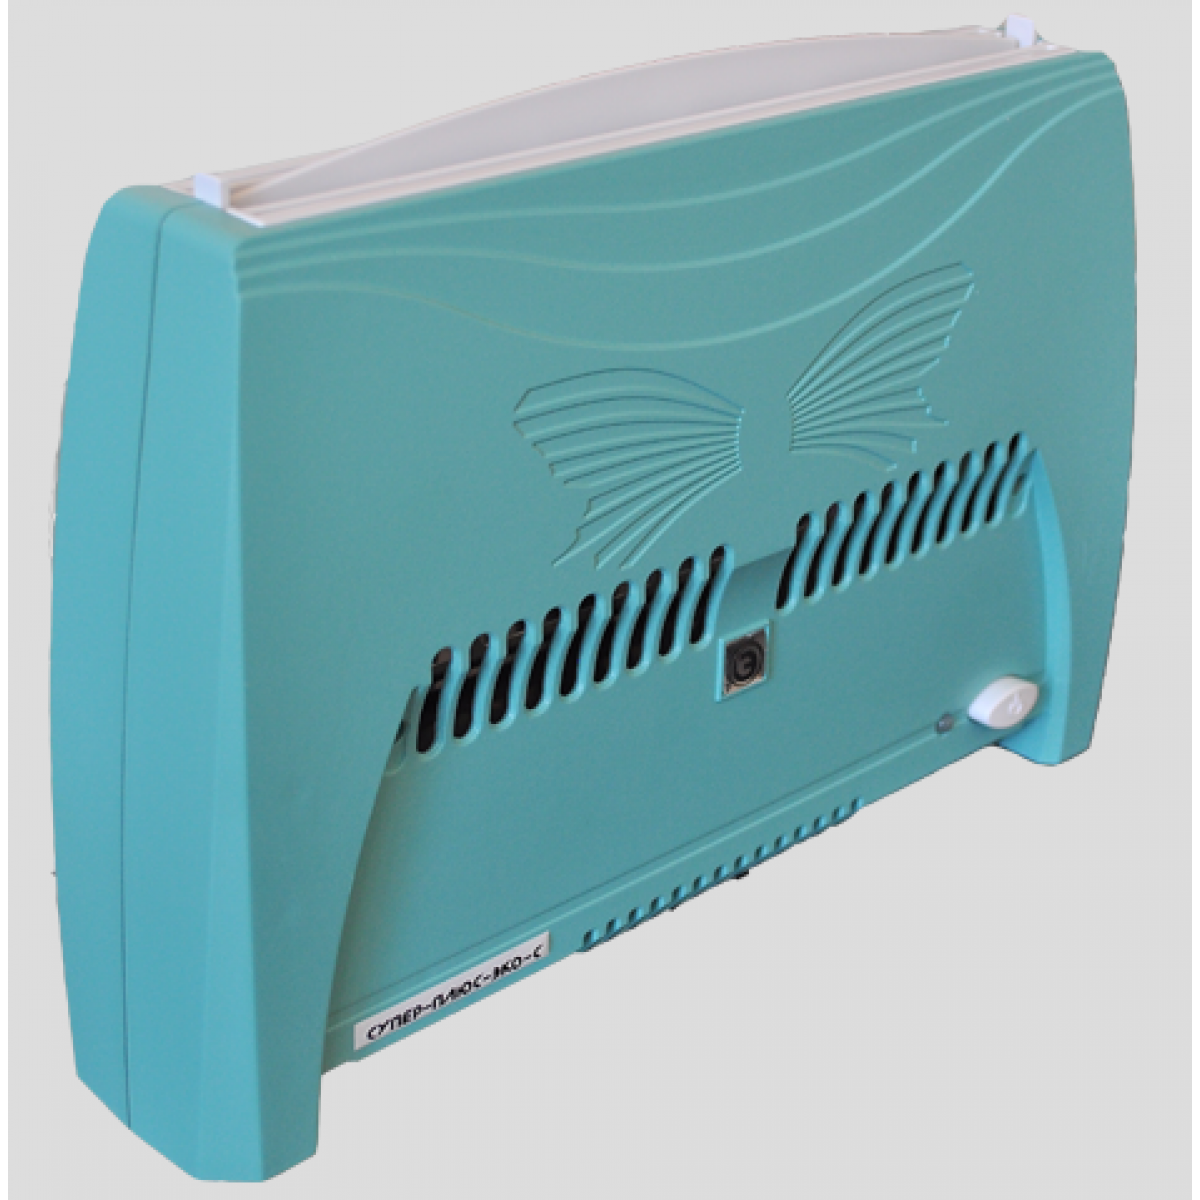 Іонізатор-очищувач повітря «Супер-Плюс-Еко-С» Модель 2008 року